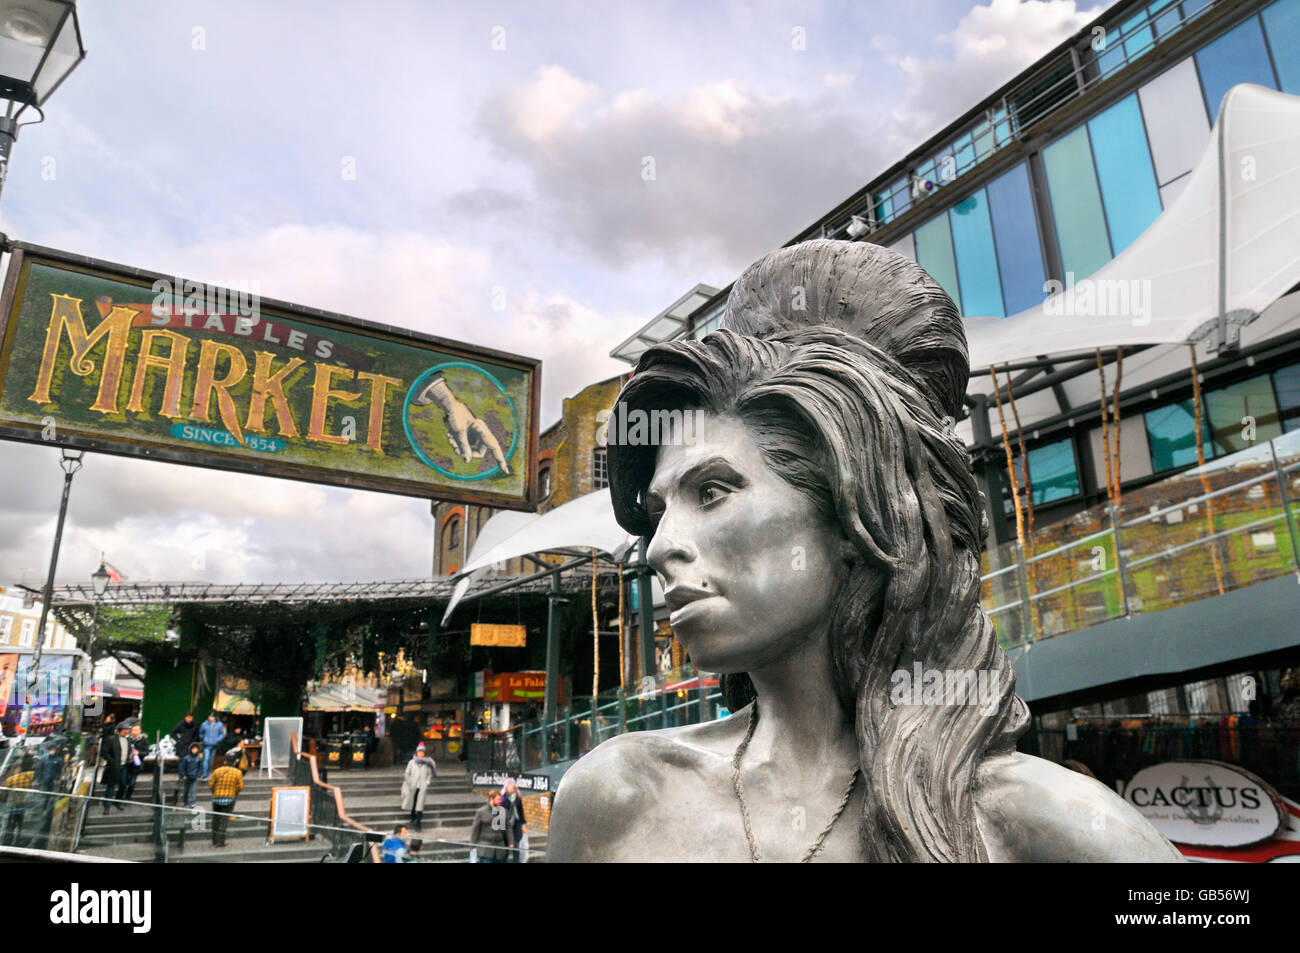 Statue en bronze d'Amy Winehouse (1983 - 2011) dans la région de Camden Stables Market, London, England, UK Banque D'Images